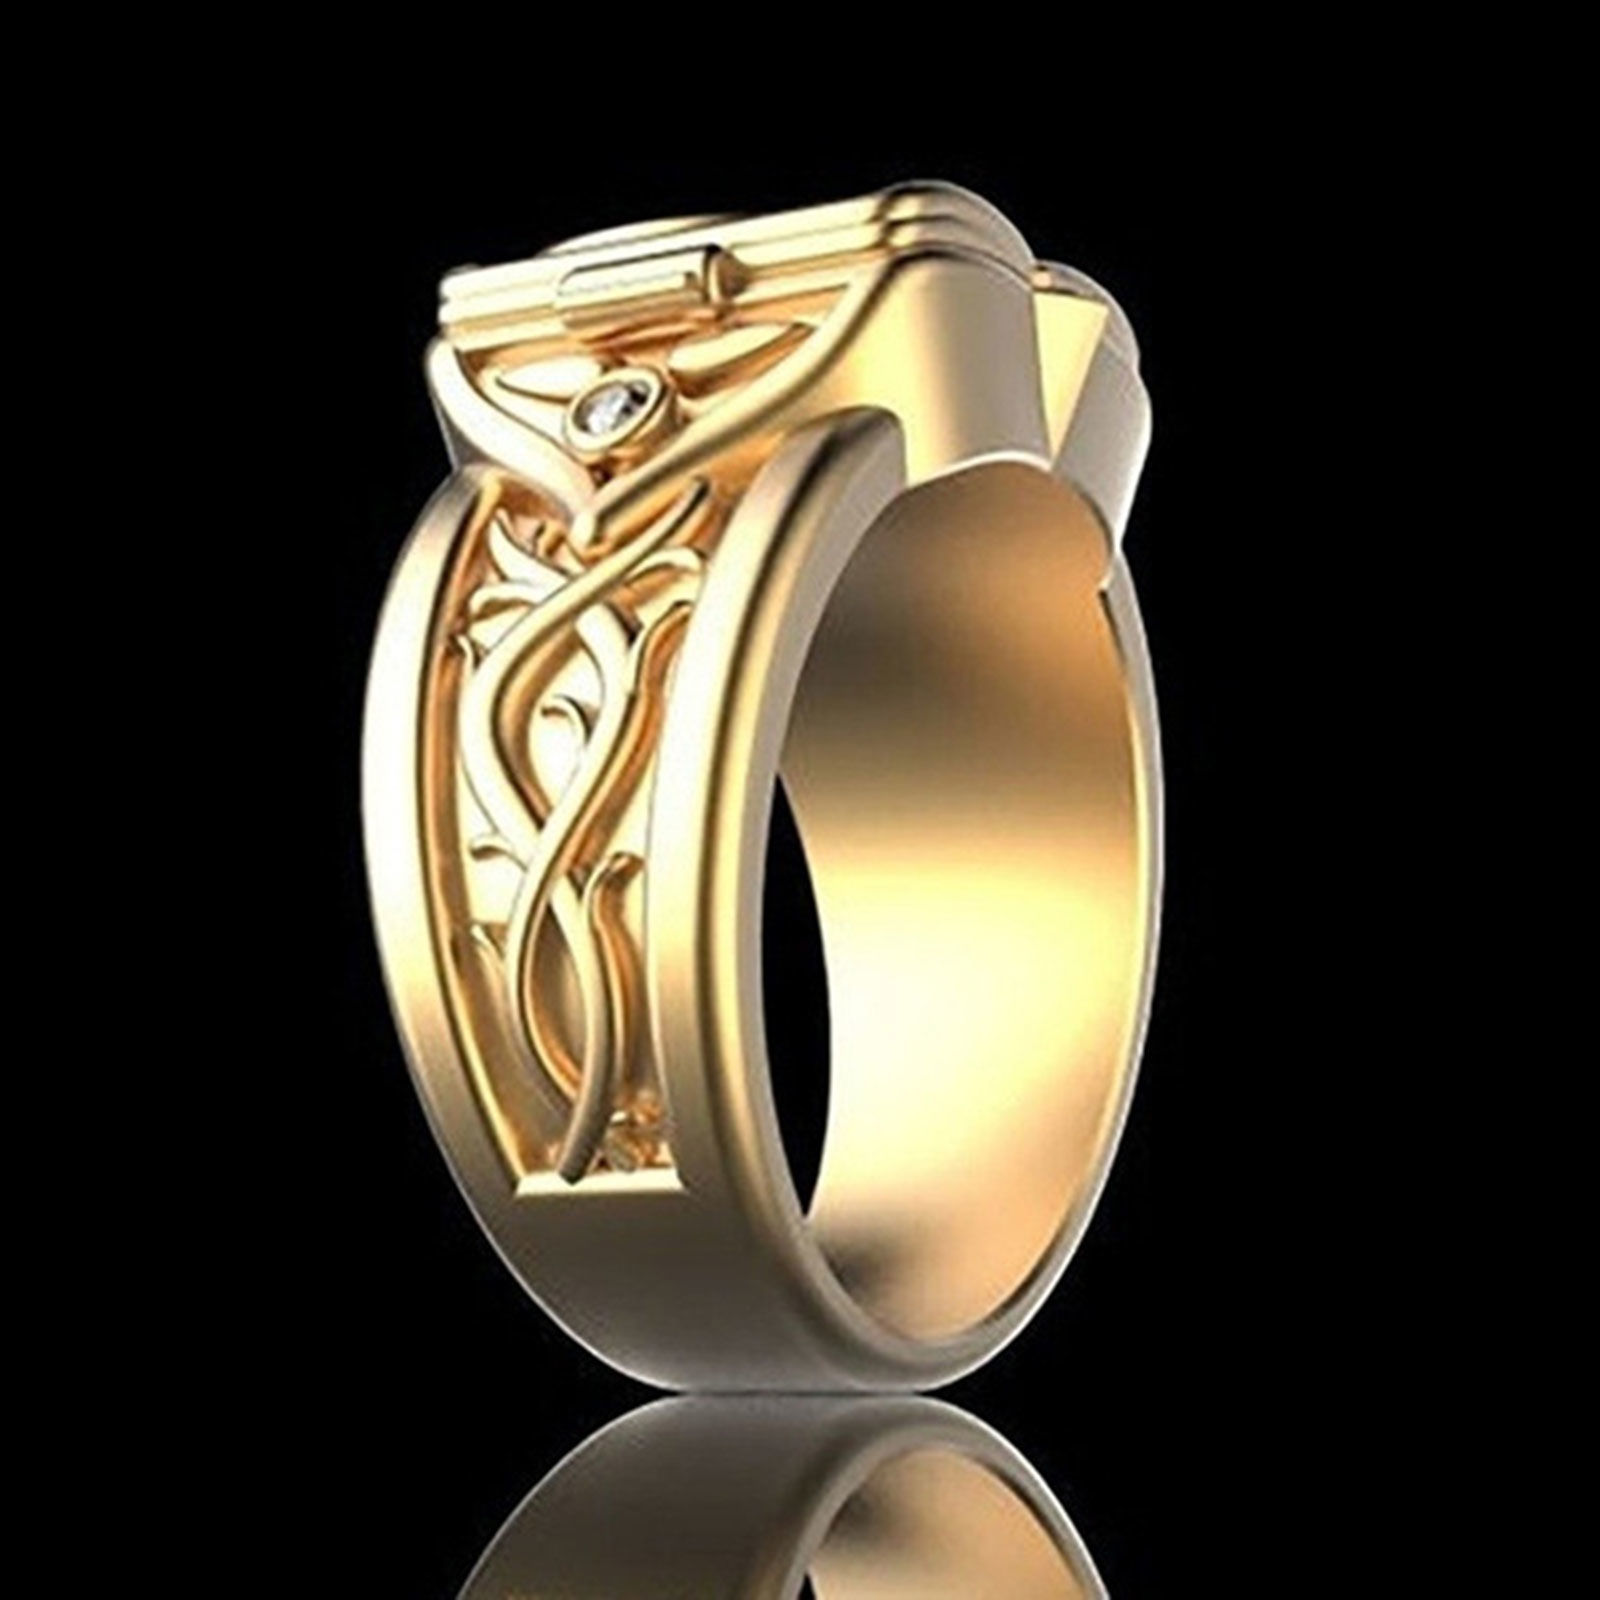 Bild von Uneinstellbar Ring Silberfarbe Zum Öffnen Transparent Strass 22.2mm（US Größe:13), 1 Stück